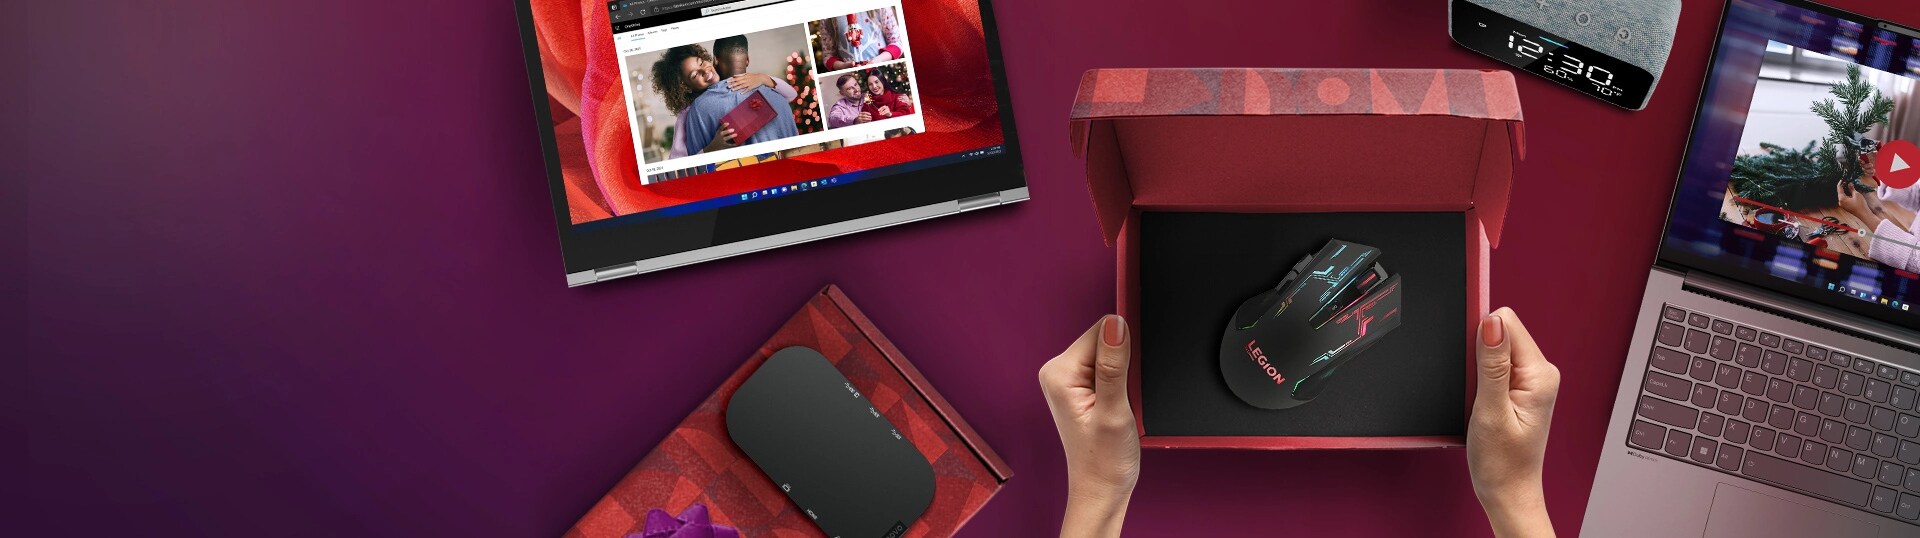 Laptop, speaker in gift box, tablet, gift